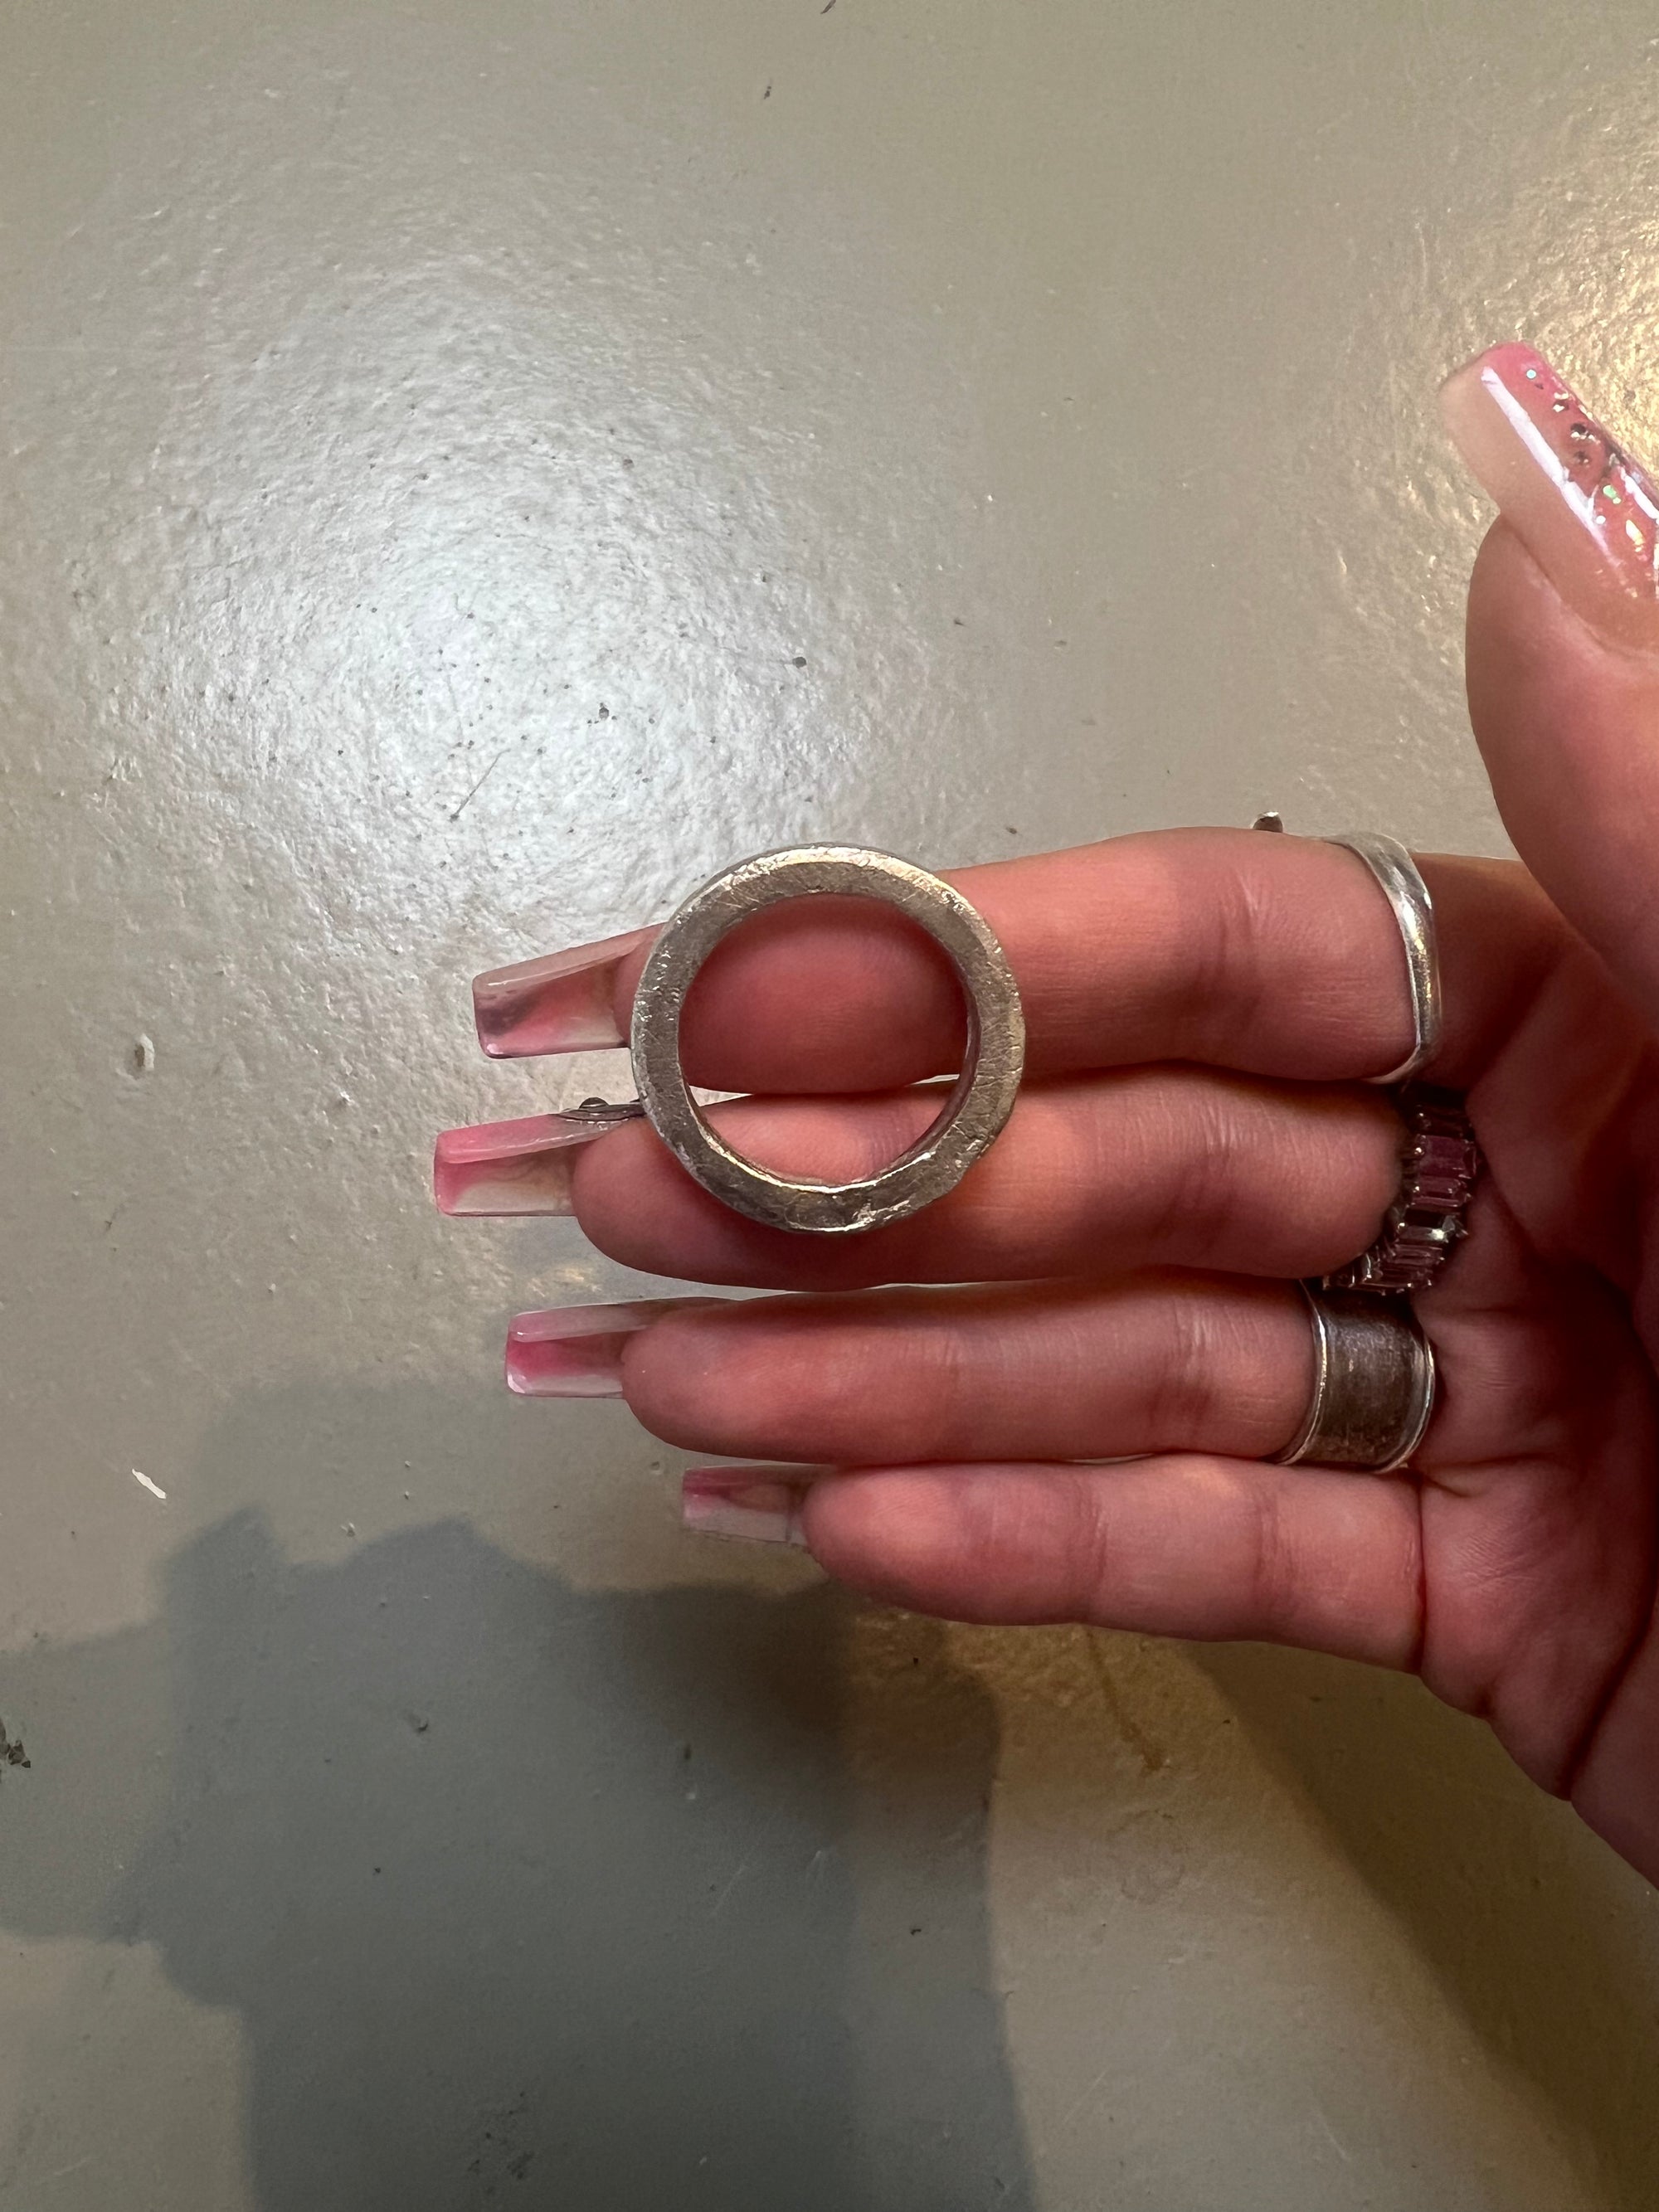 Produktbild von ringsbyclausen Ring „Kantig 2“ vor grauem boden